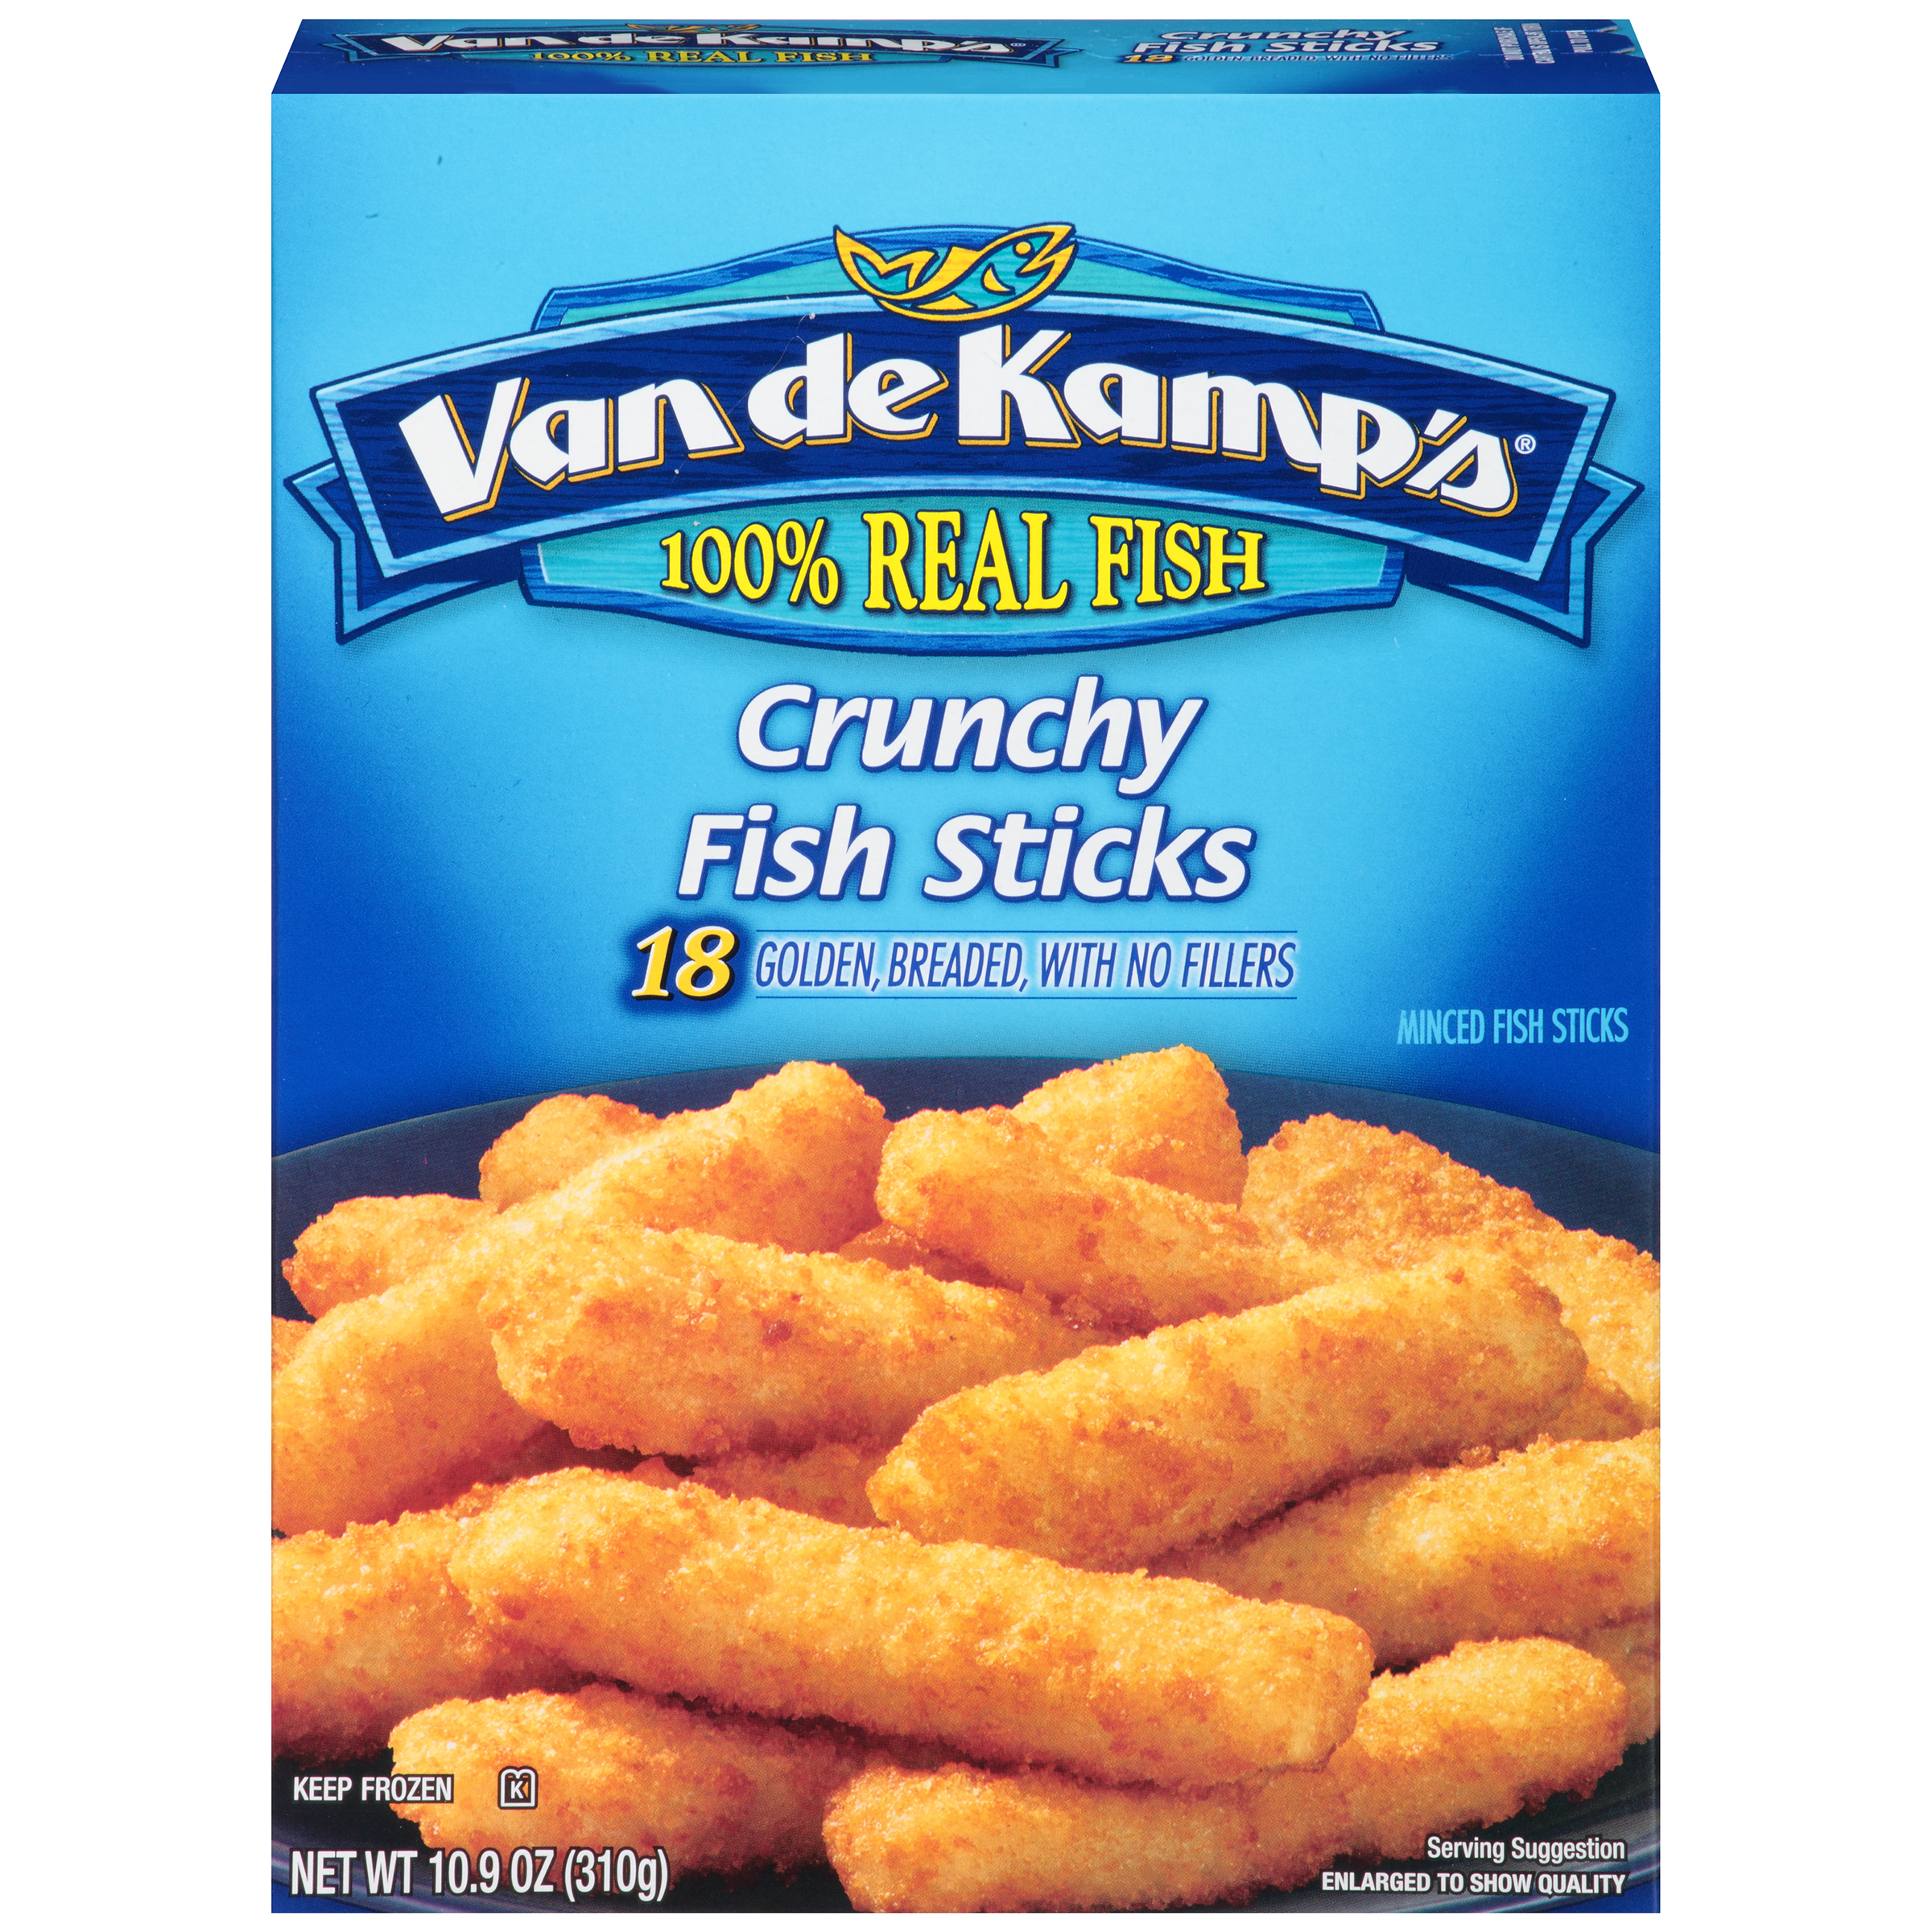 Van de Kamp's Crunchy Fish Sticks, Golden Breaded Minced